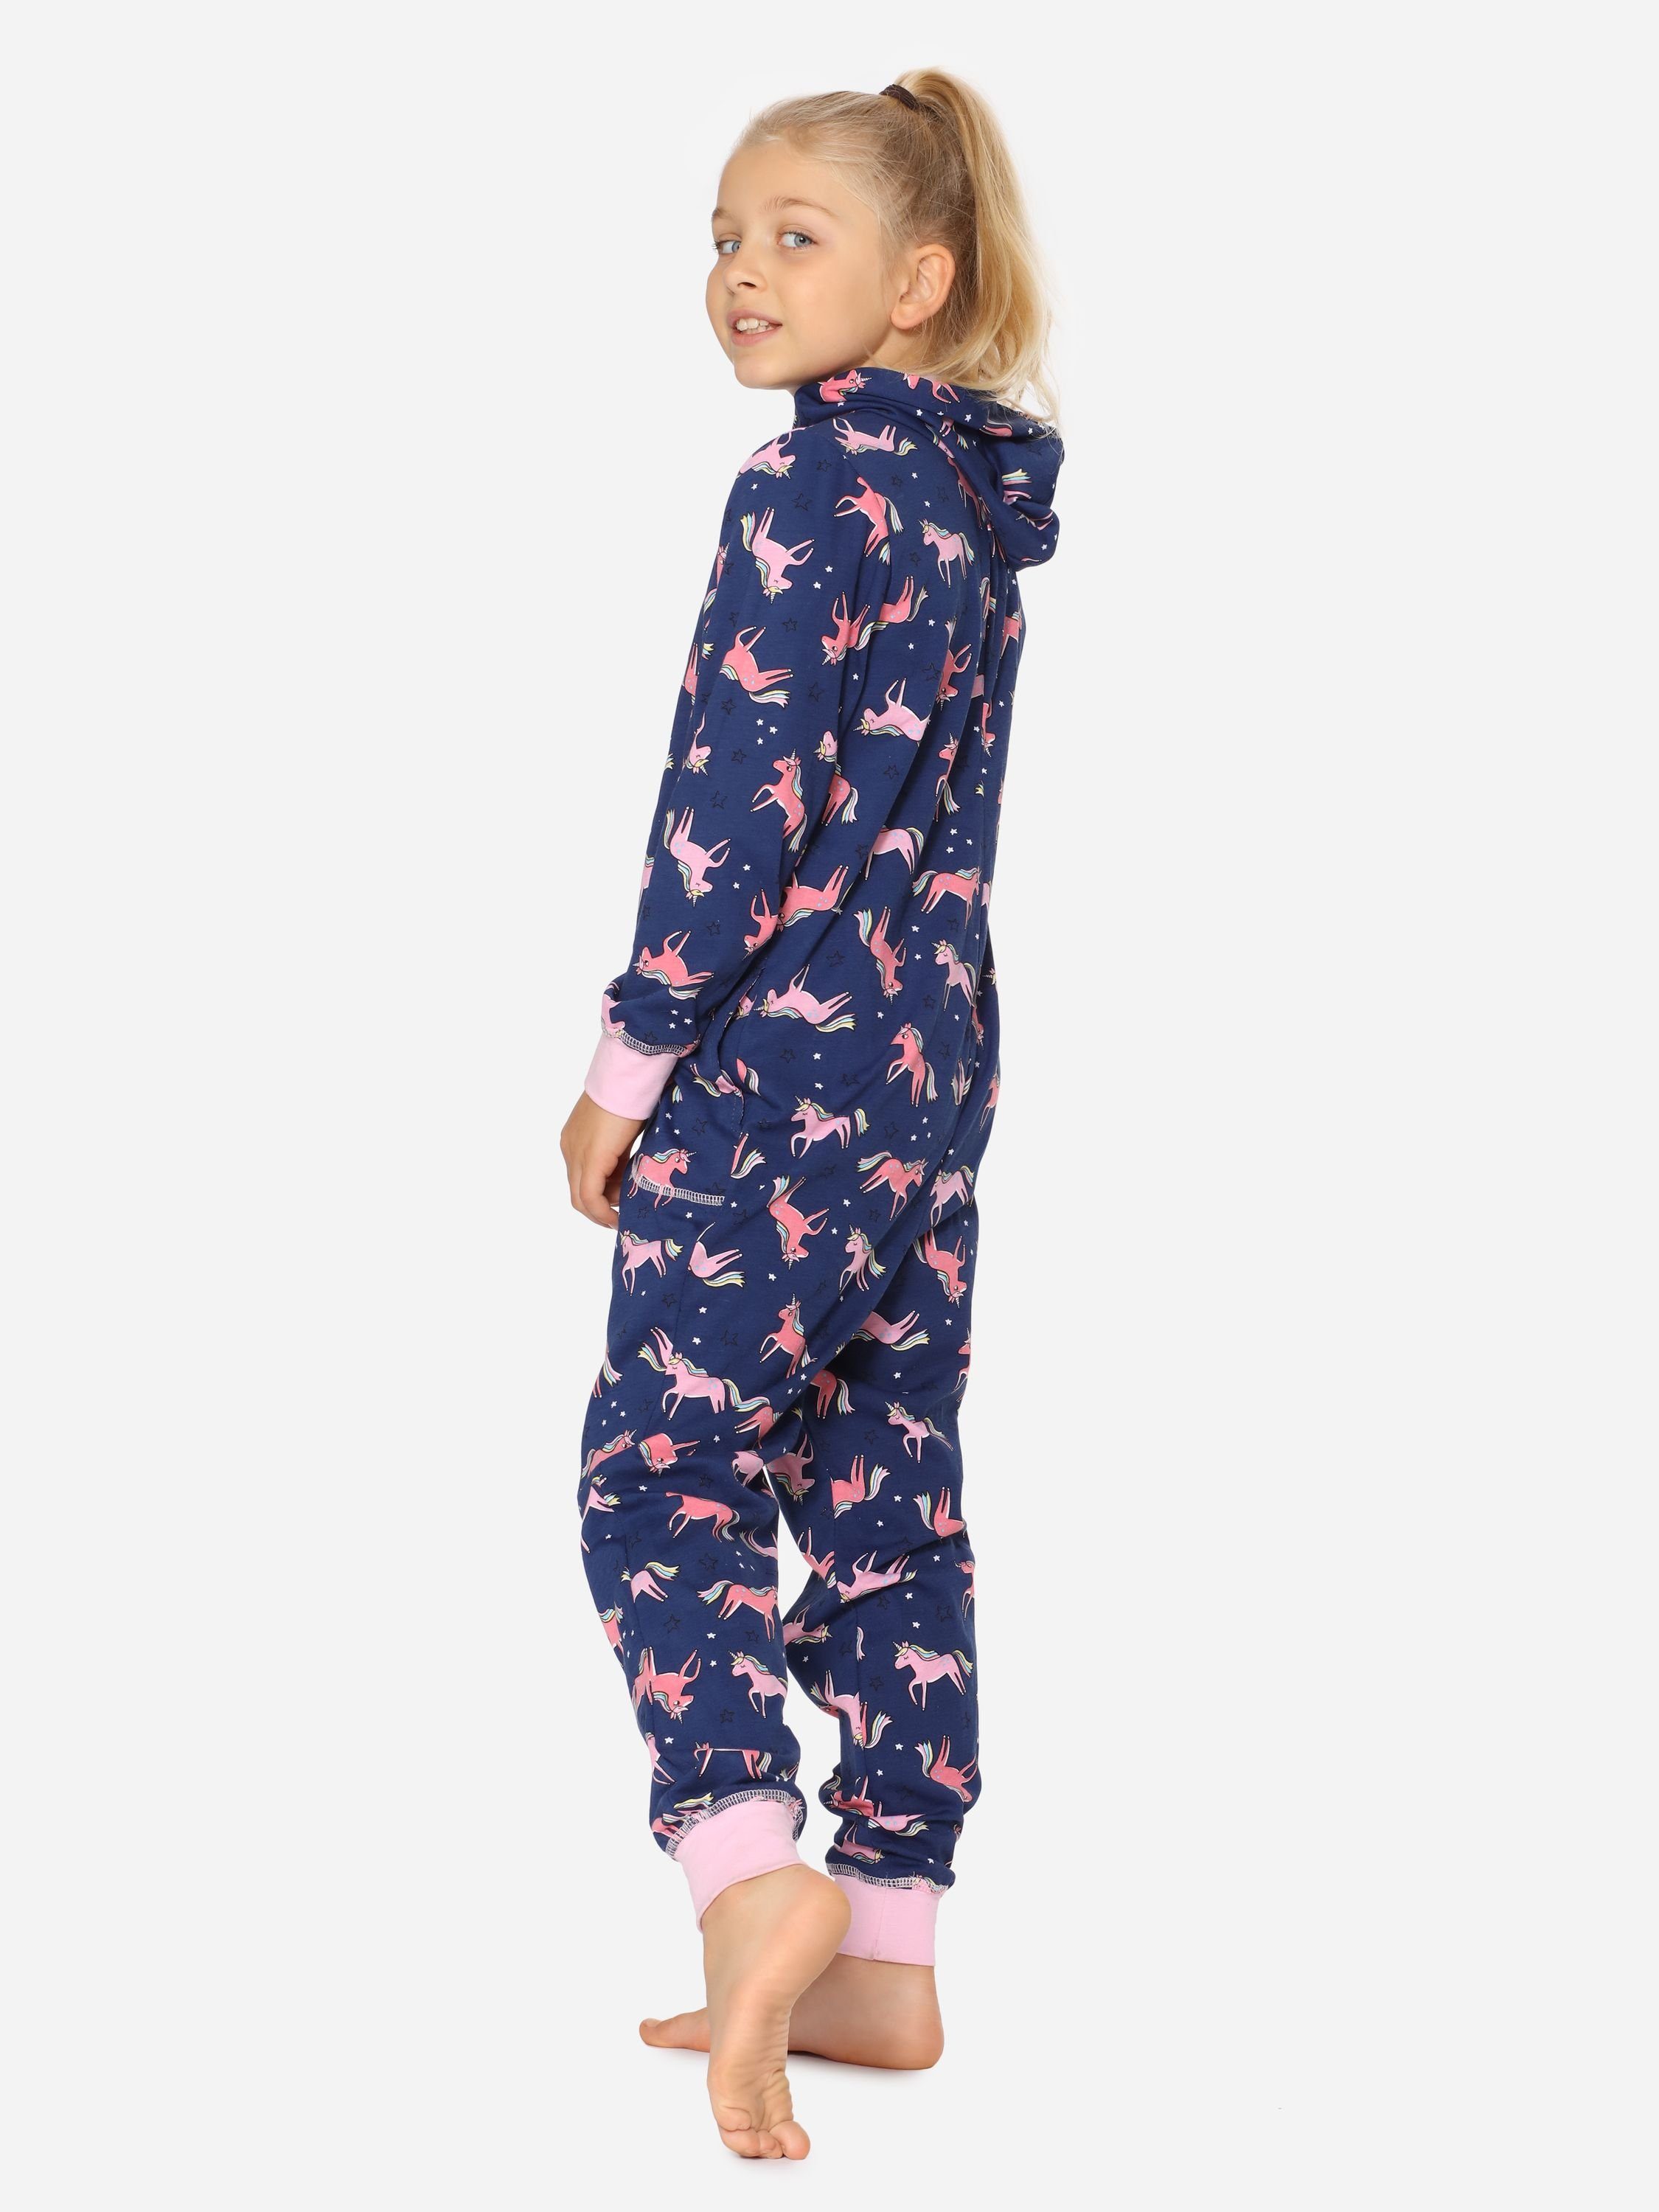 Marineblau MS10-223 Mädchen Einhorn Kapuze mit Schlafoverall Merry Schlafanzug Style